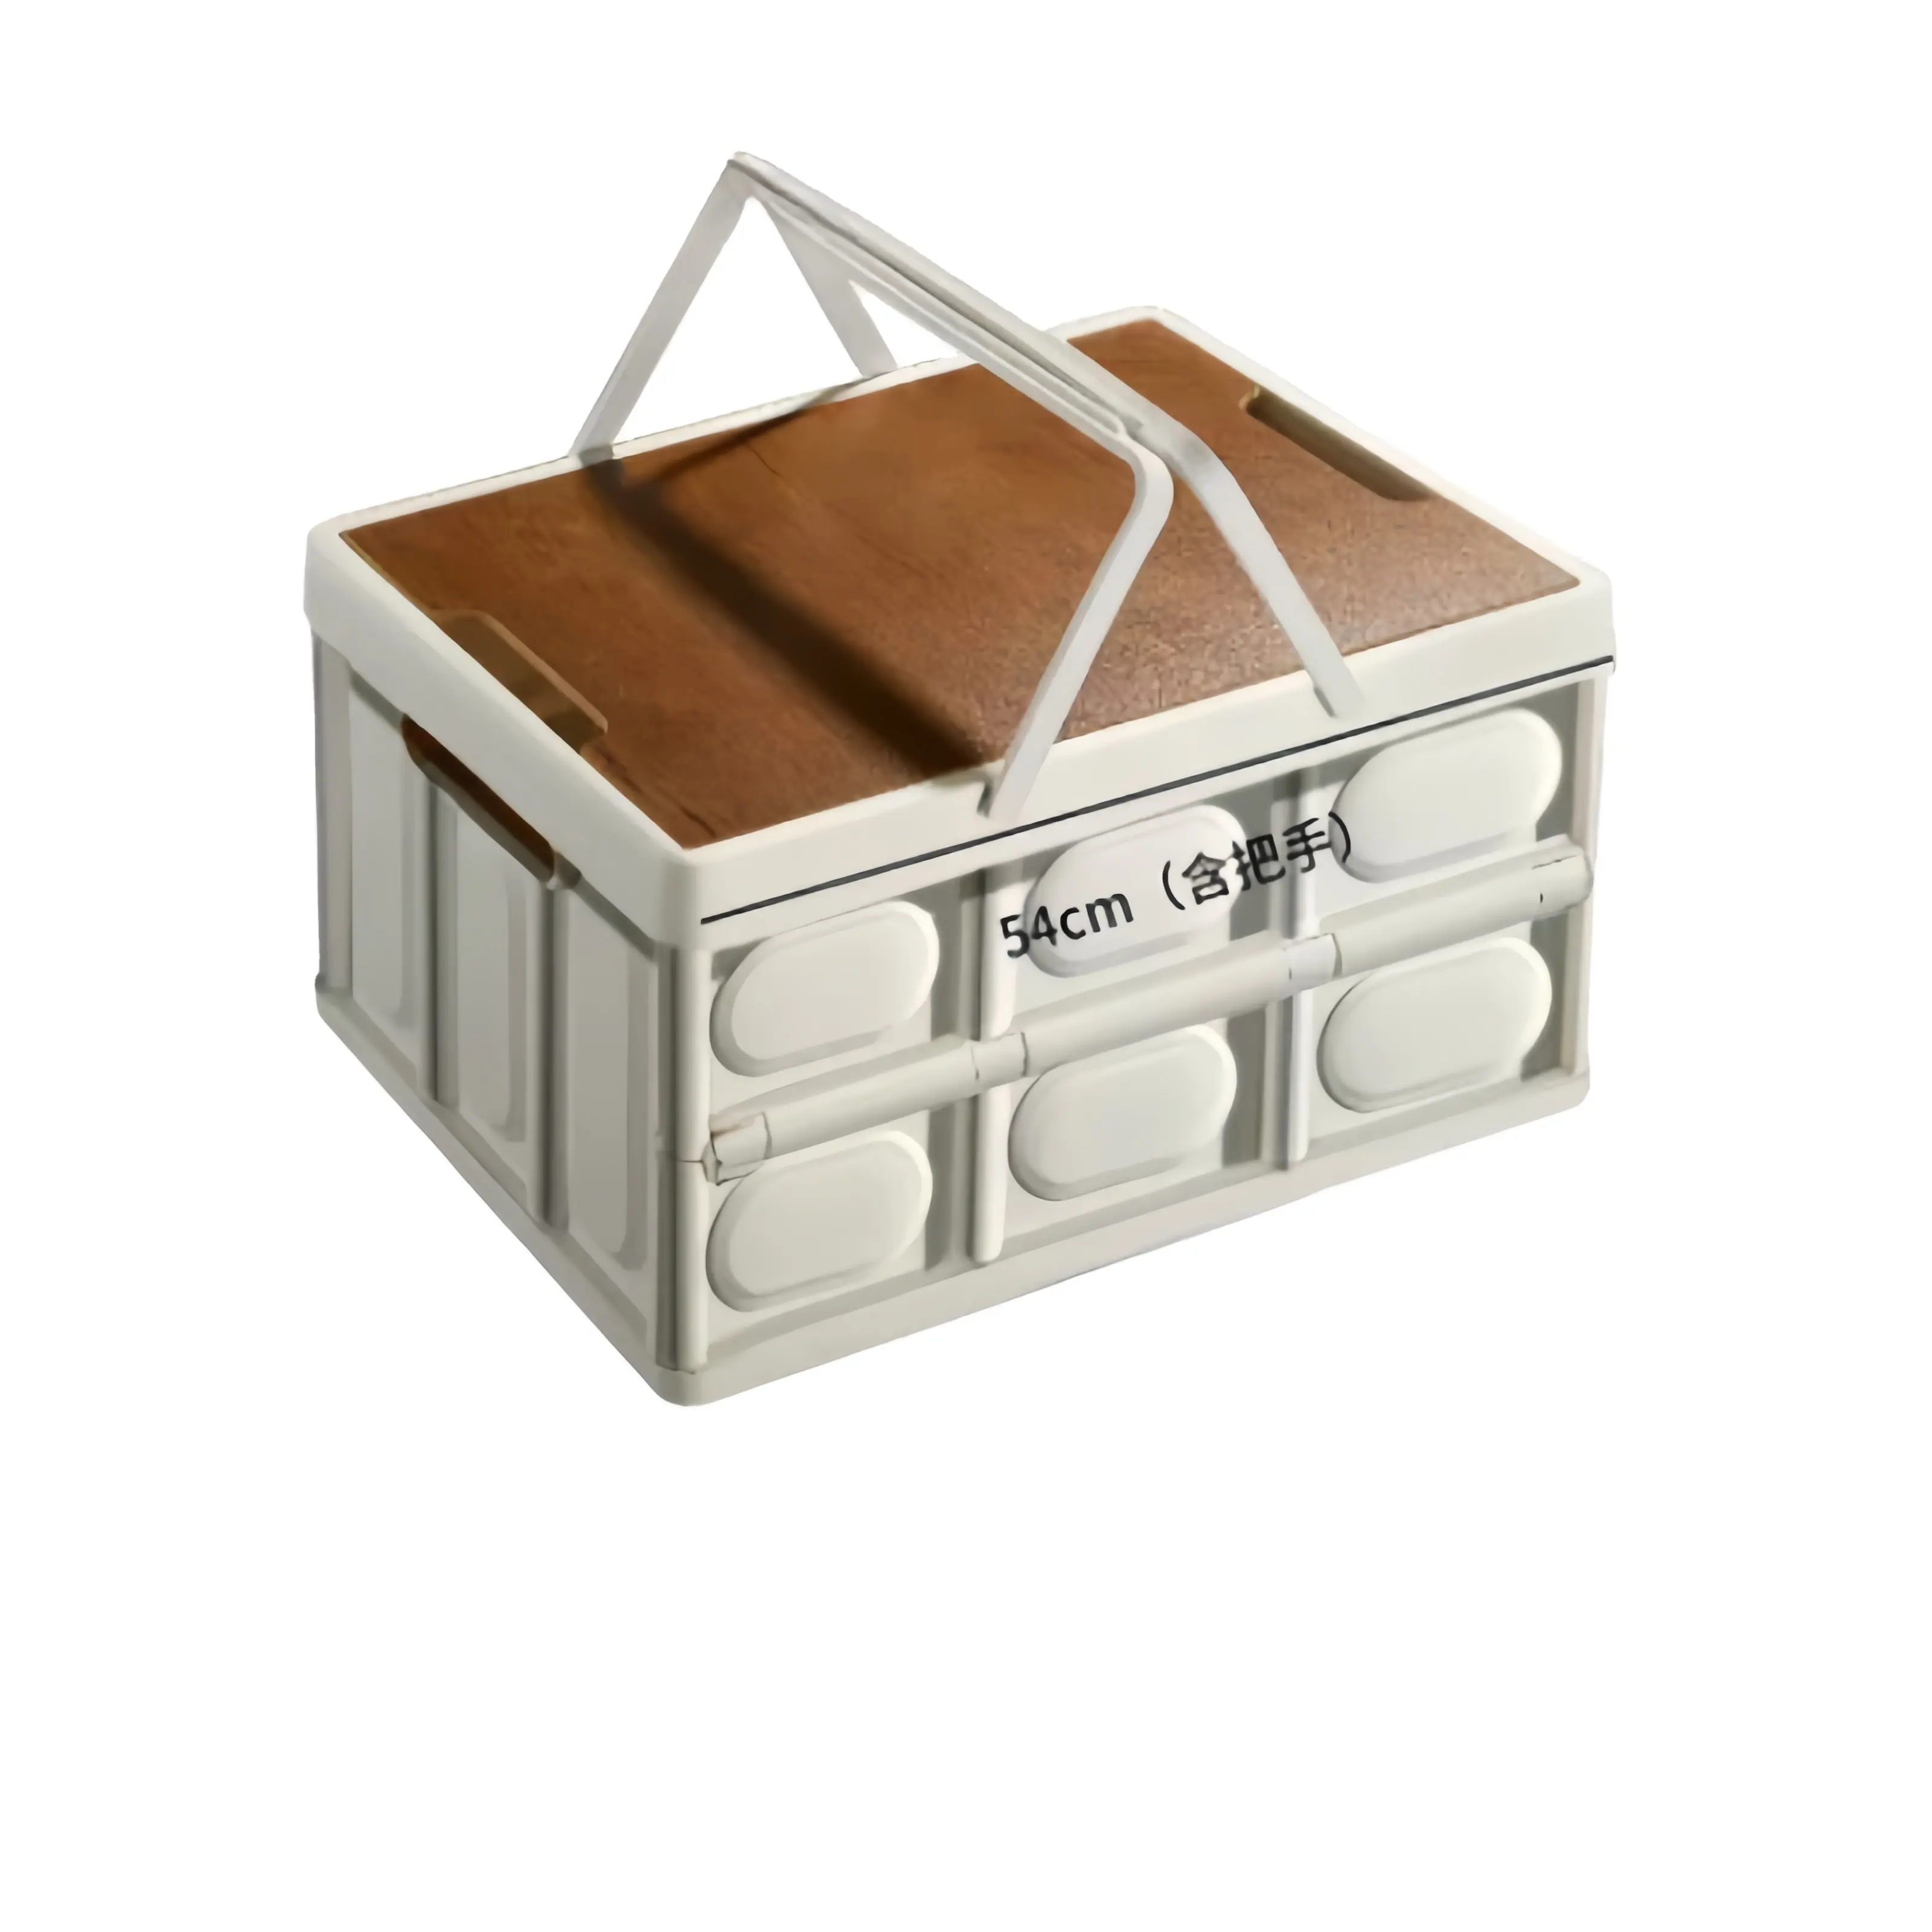 Gấp hộp lưu trữ với xử lý bằng gỗ Bìa cắm trại ngoài trời di động gấp bảng Dã Ngoại giỏ lưu trữ và phân loại hộp